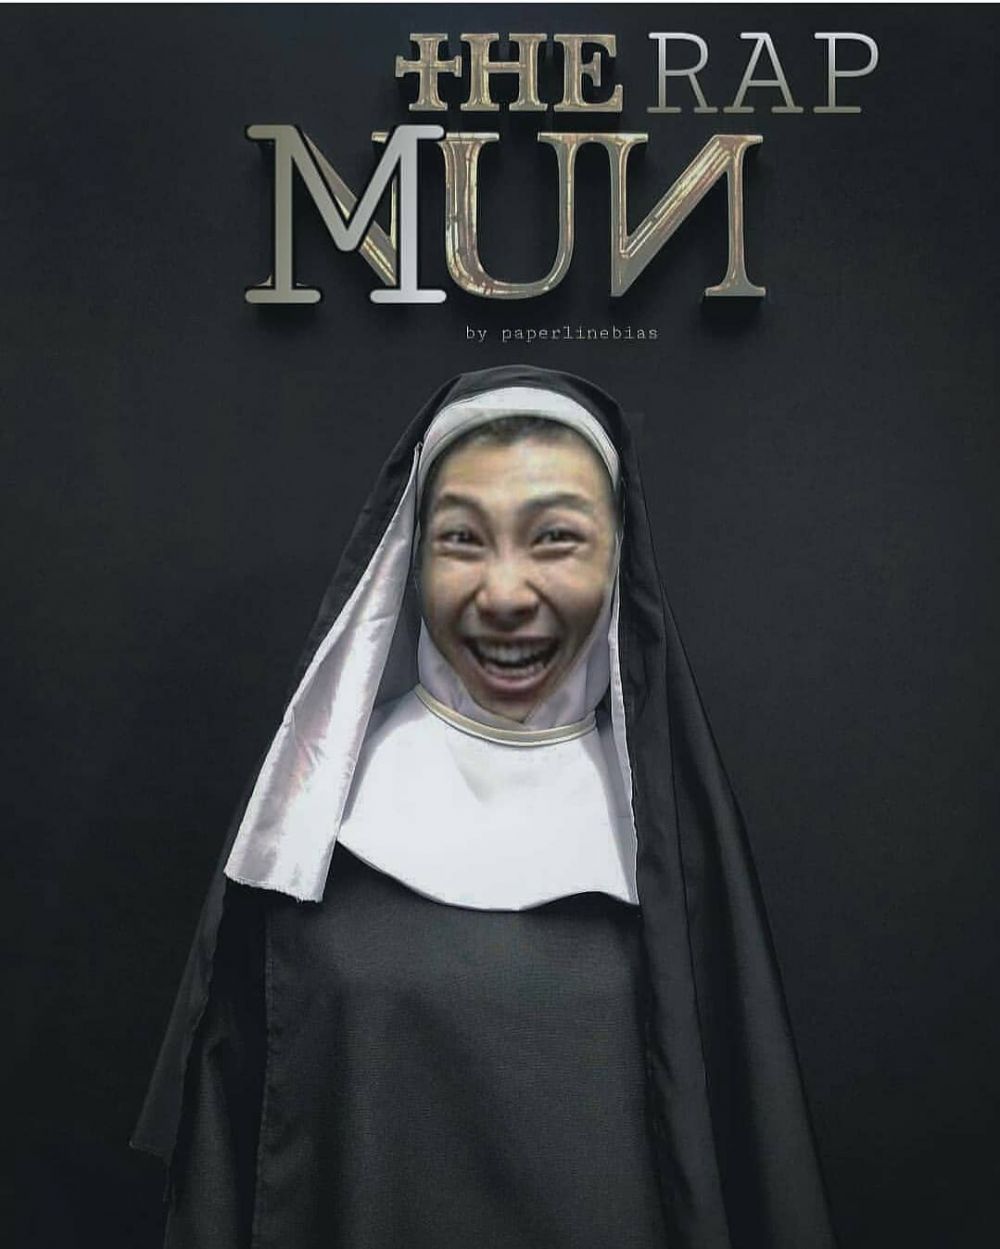 10 Kreasi dandan ala Valak di film The Nun ini bikin gagal seram